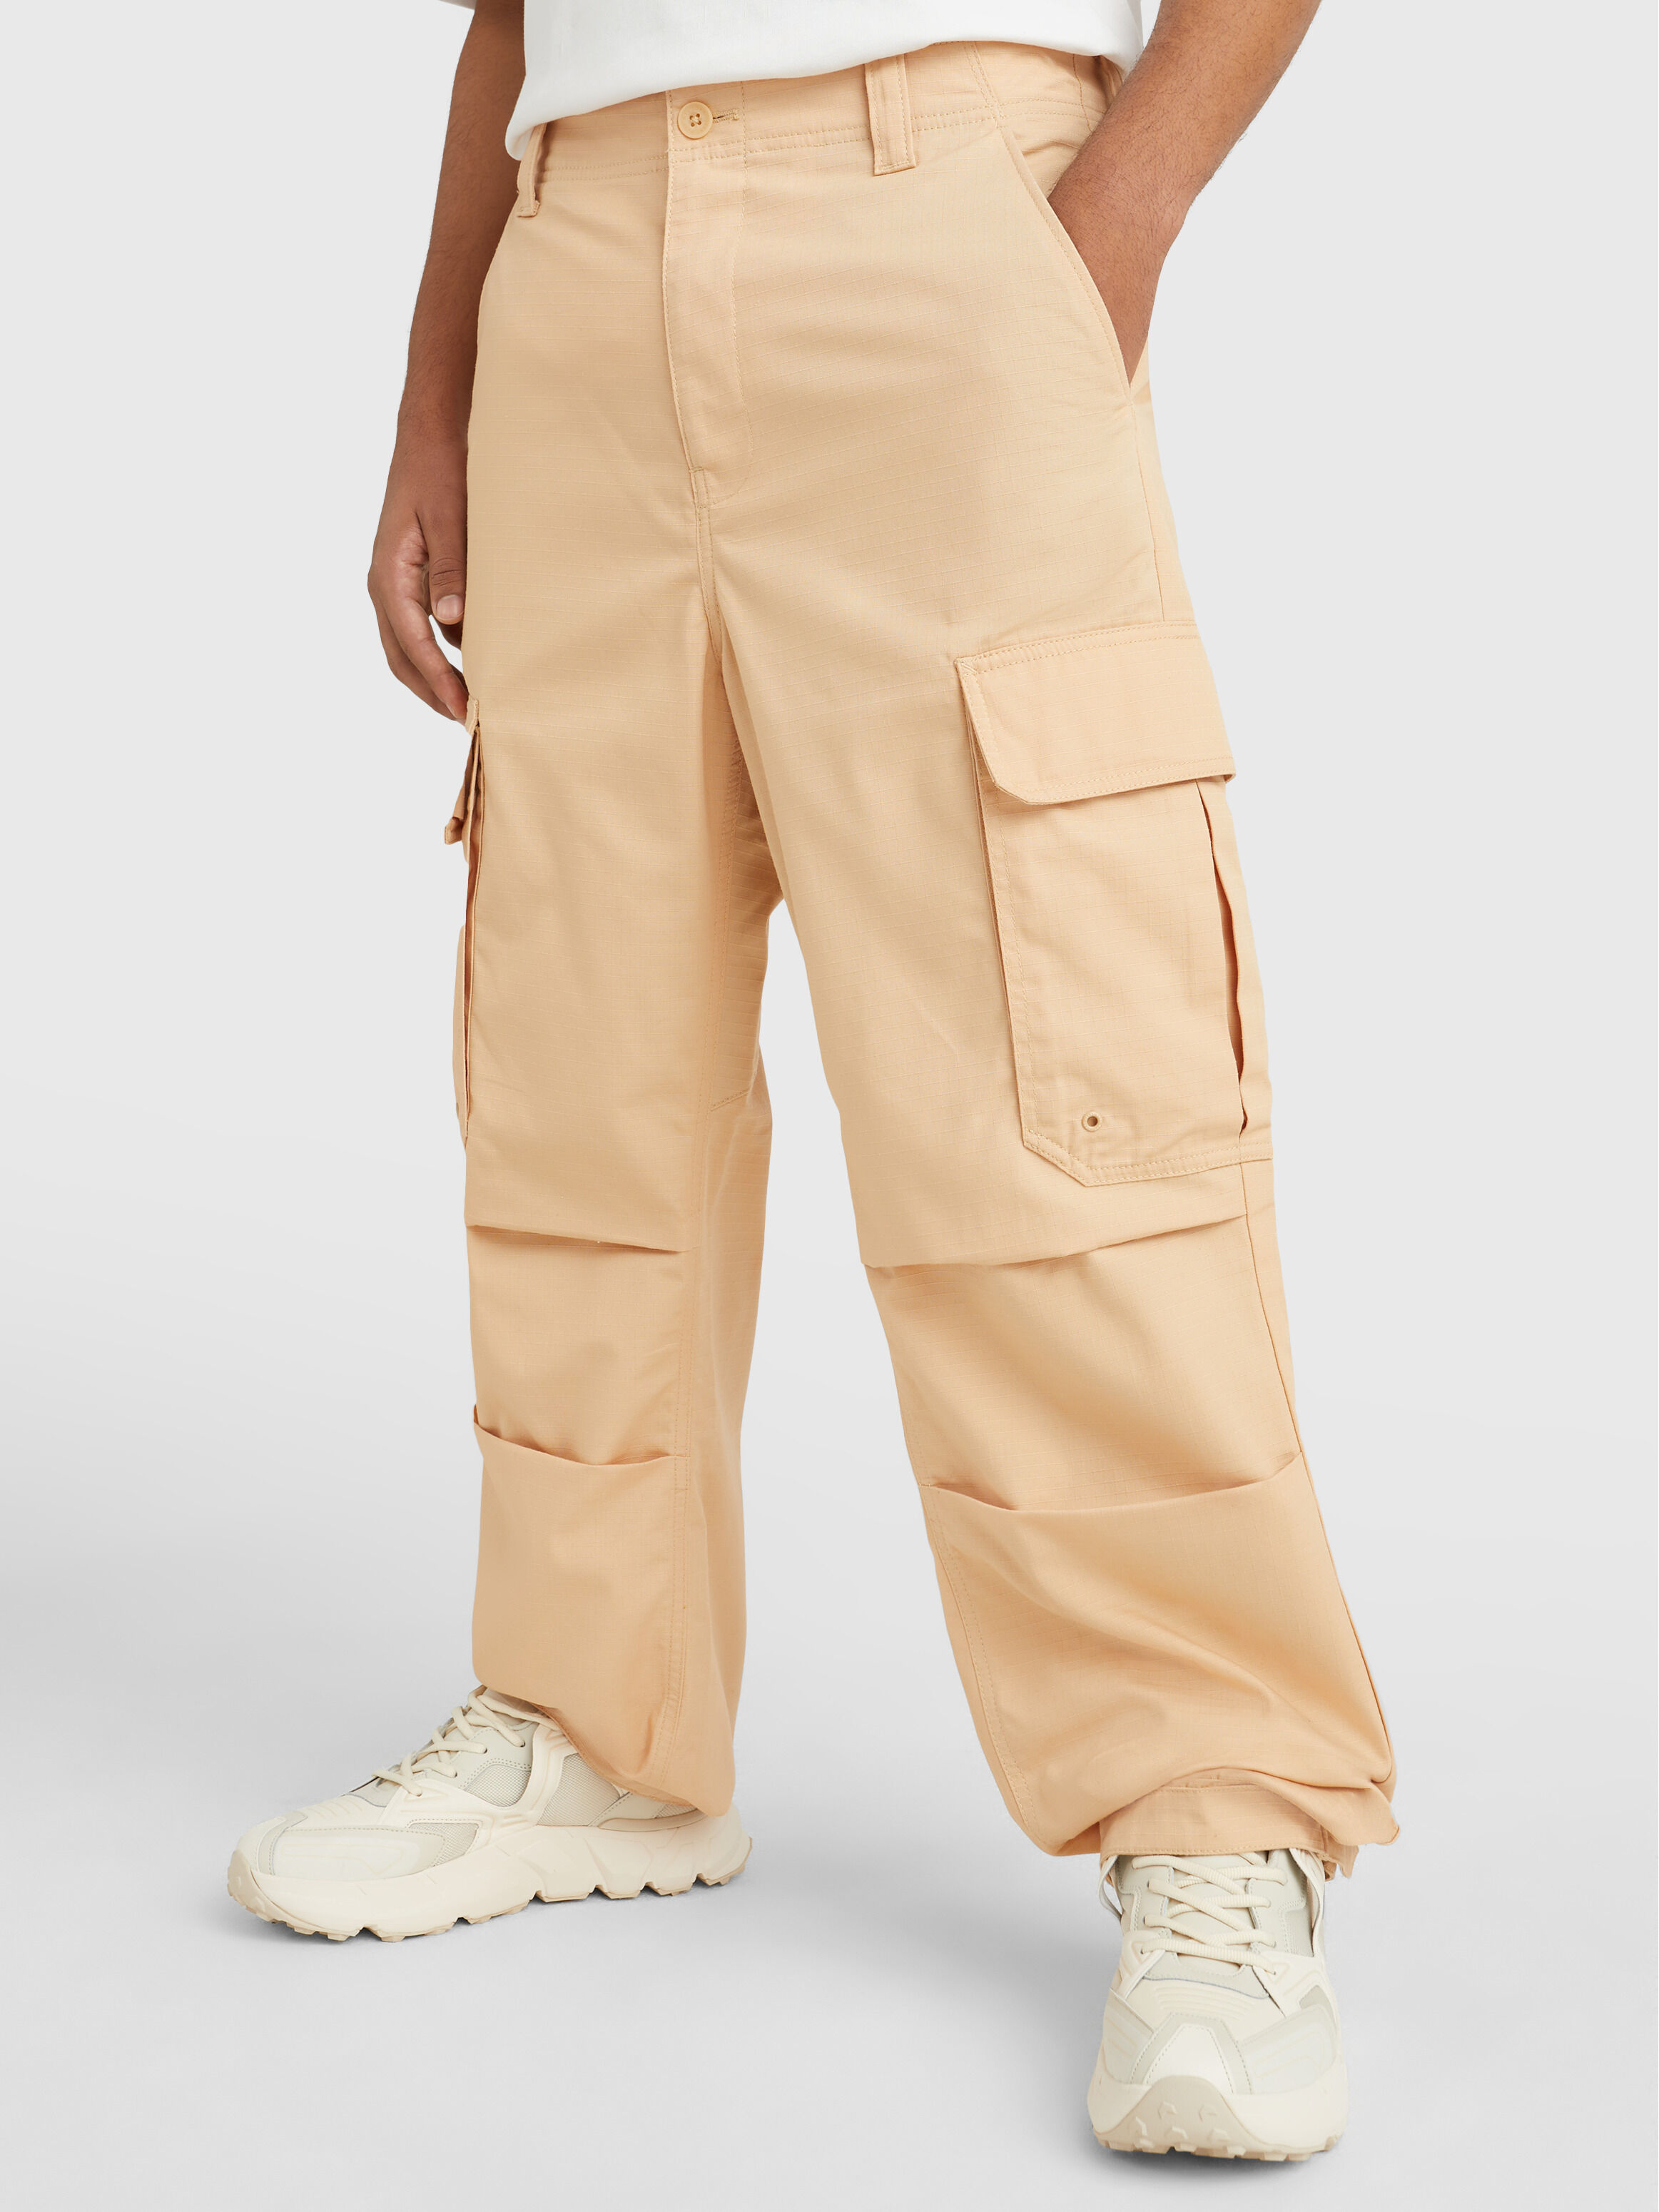 New Men's Corduroy Baggy Trousers Loose Wide Leg Plain Color Pants Retro  Style | eBay